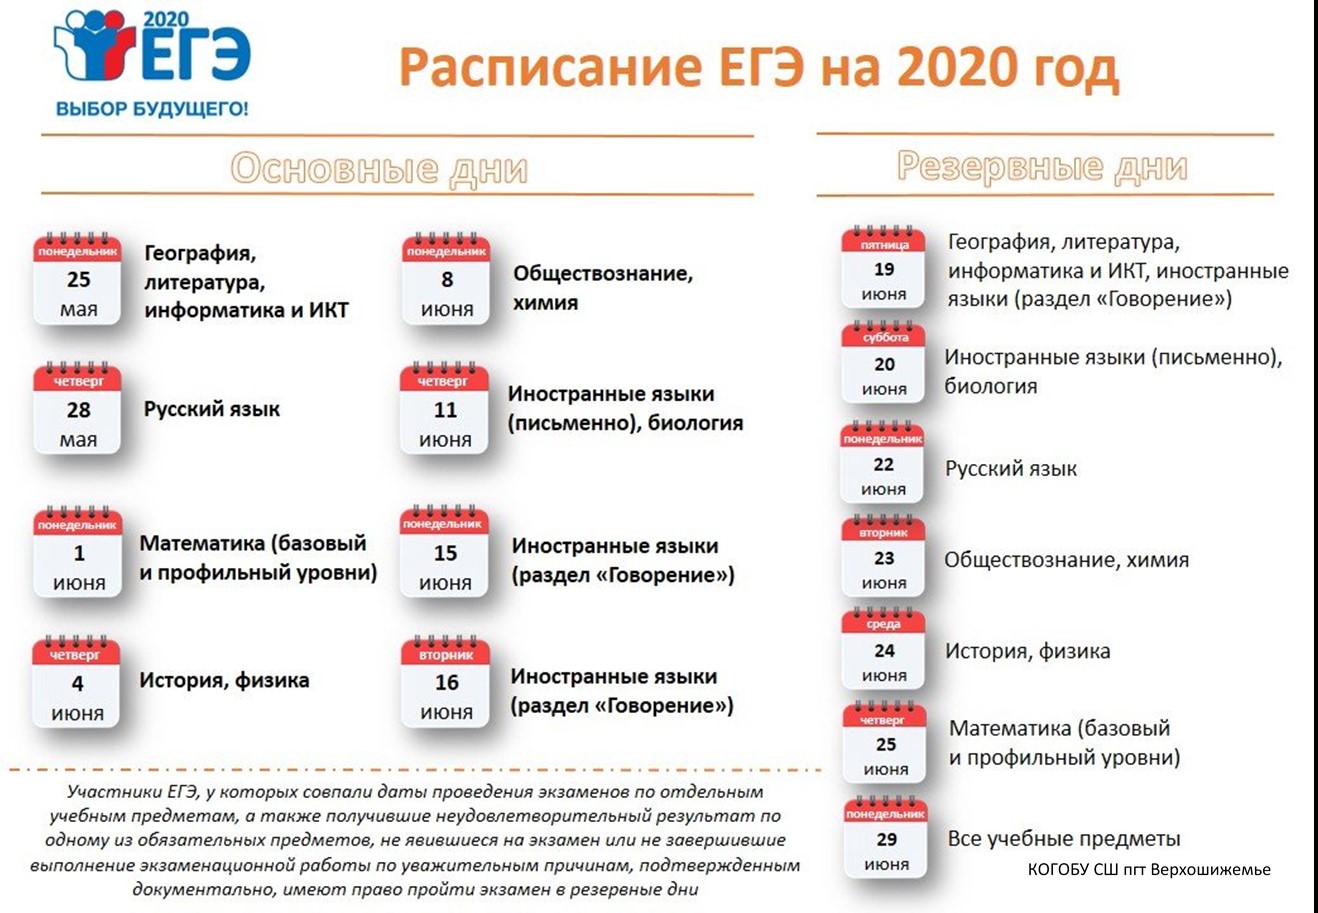 Новые даты экзаменов егэ 2024. ЕГЭ 2020 даты проведения. Сроки проведения единого государственного экзамена в 2020 году. ЕГЭ 2020 расписание экзаменов. Резервные даты ЕГЭ 2020.